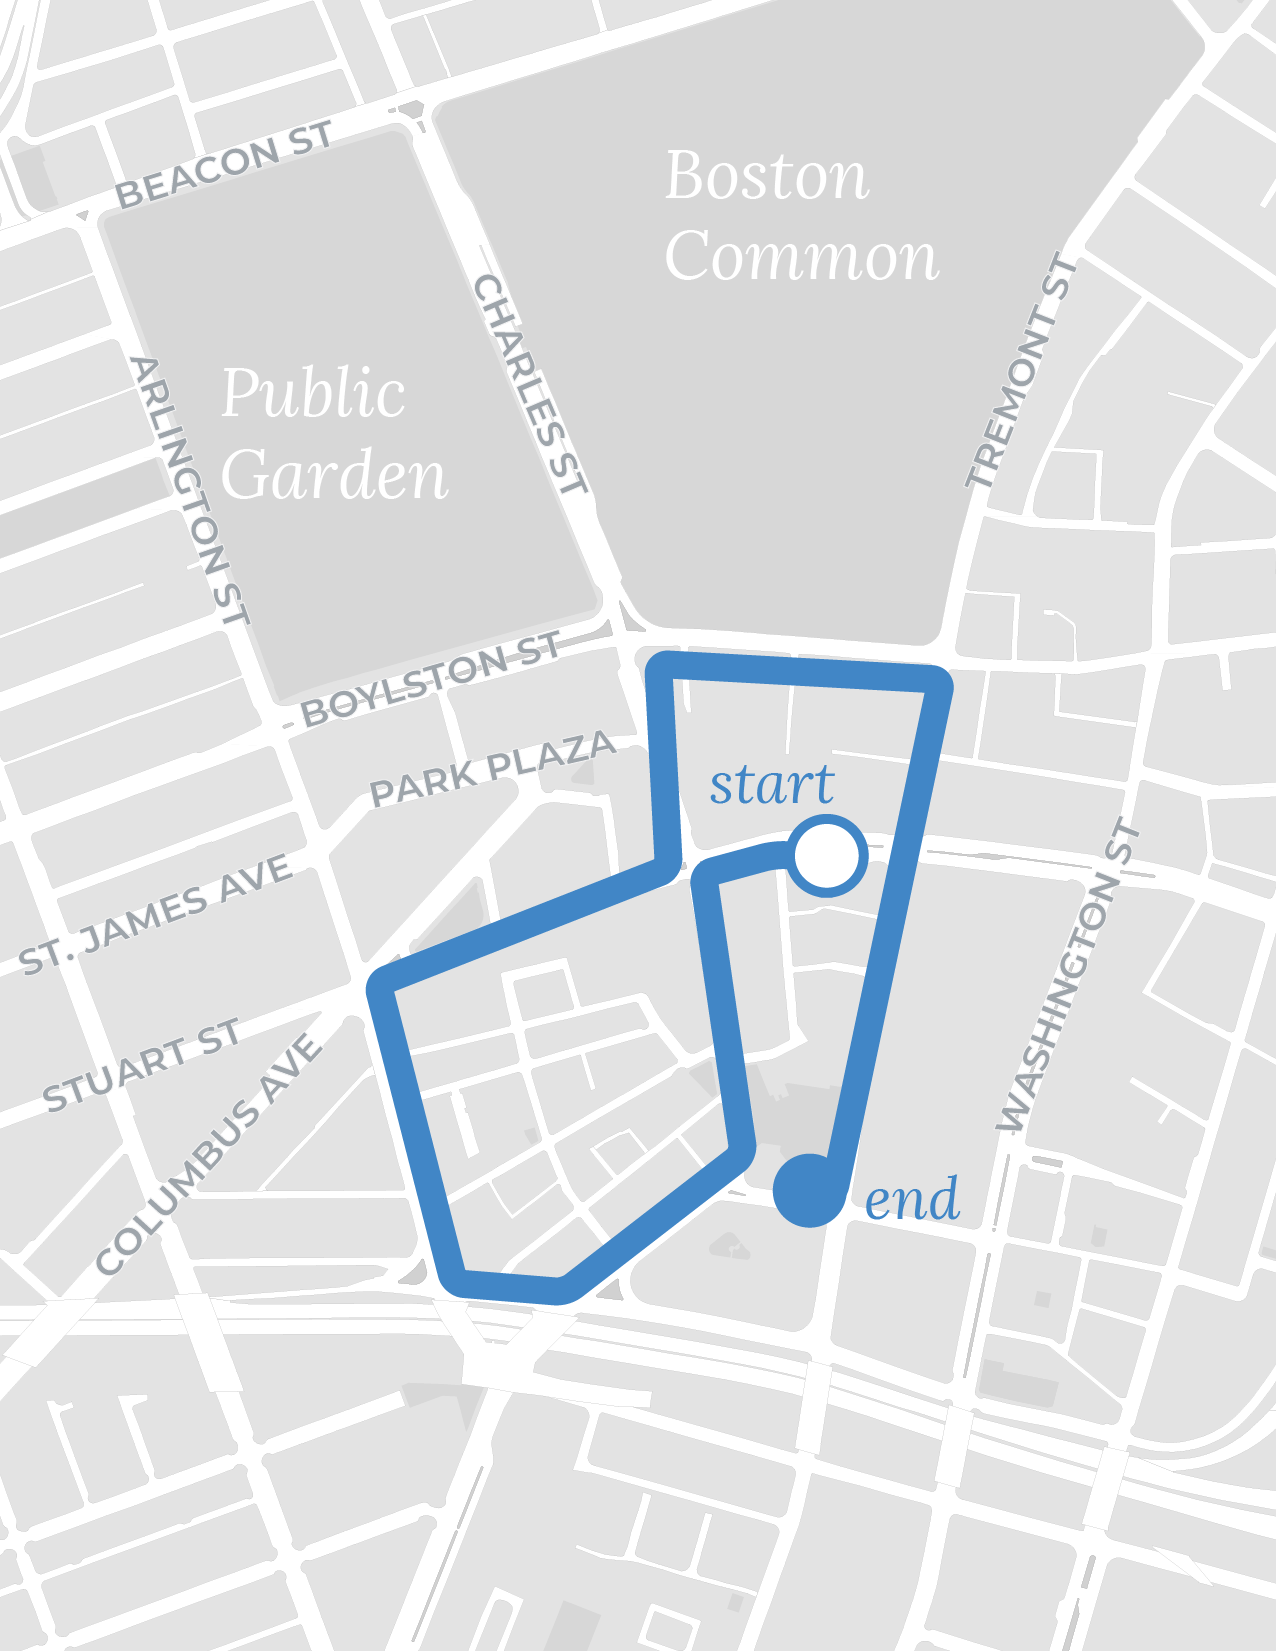 Bay Village/Chinatown walk route map